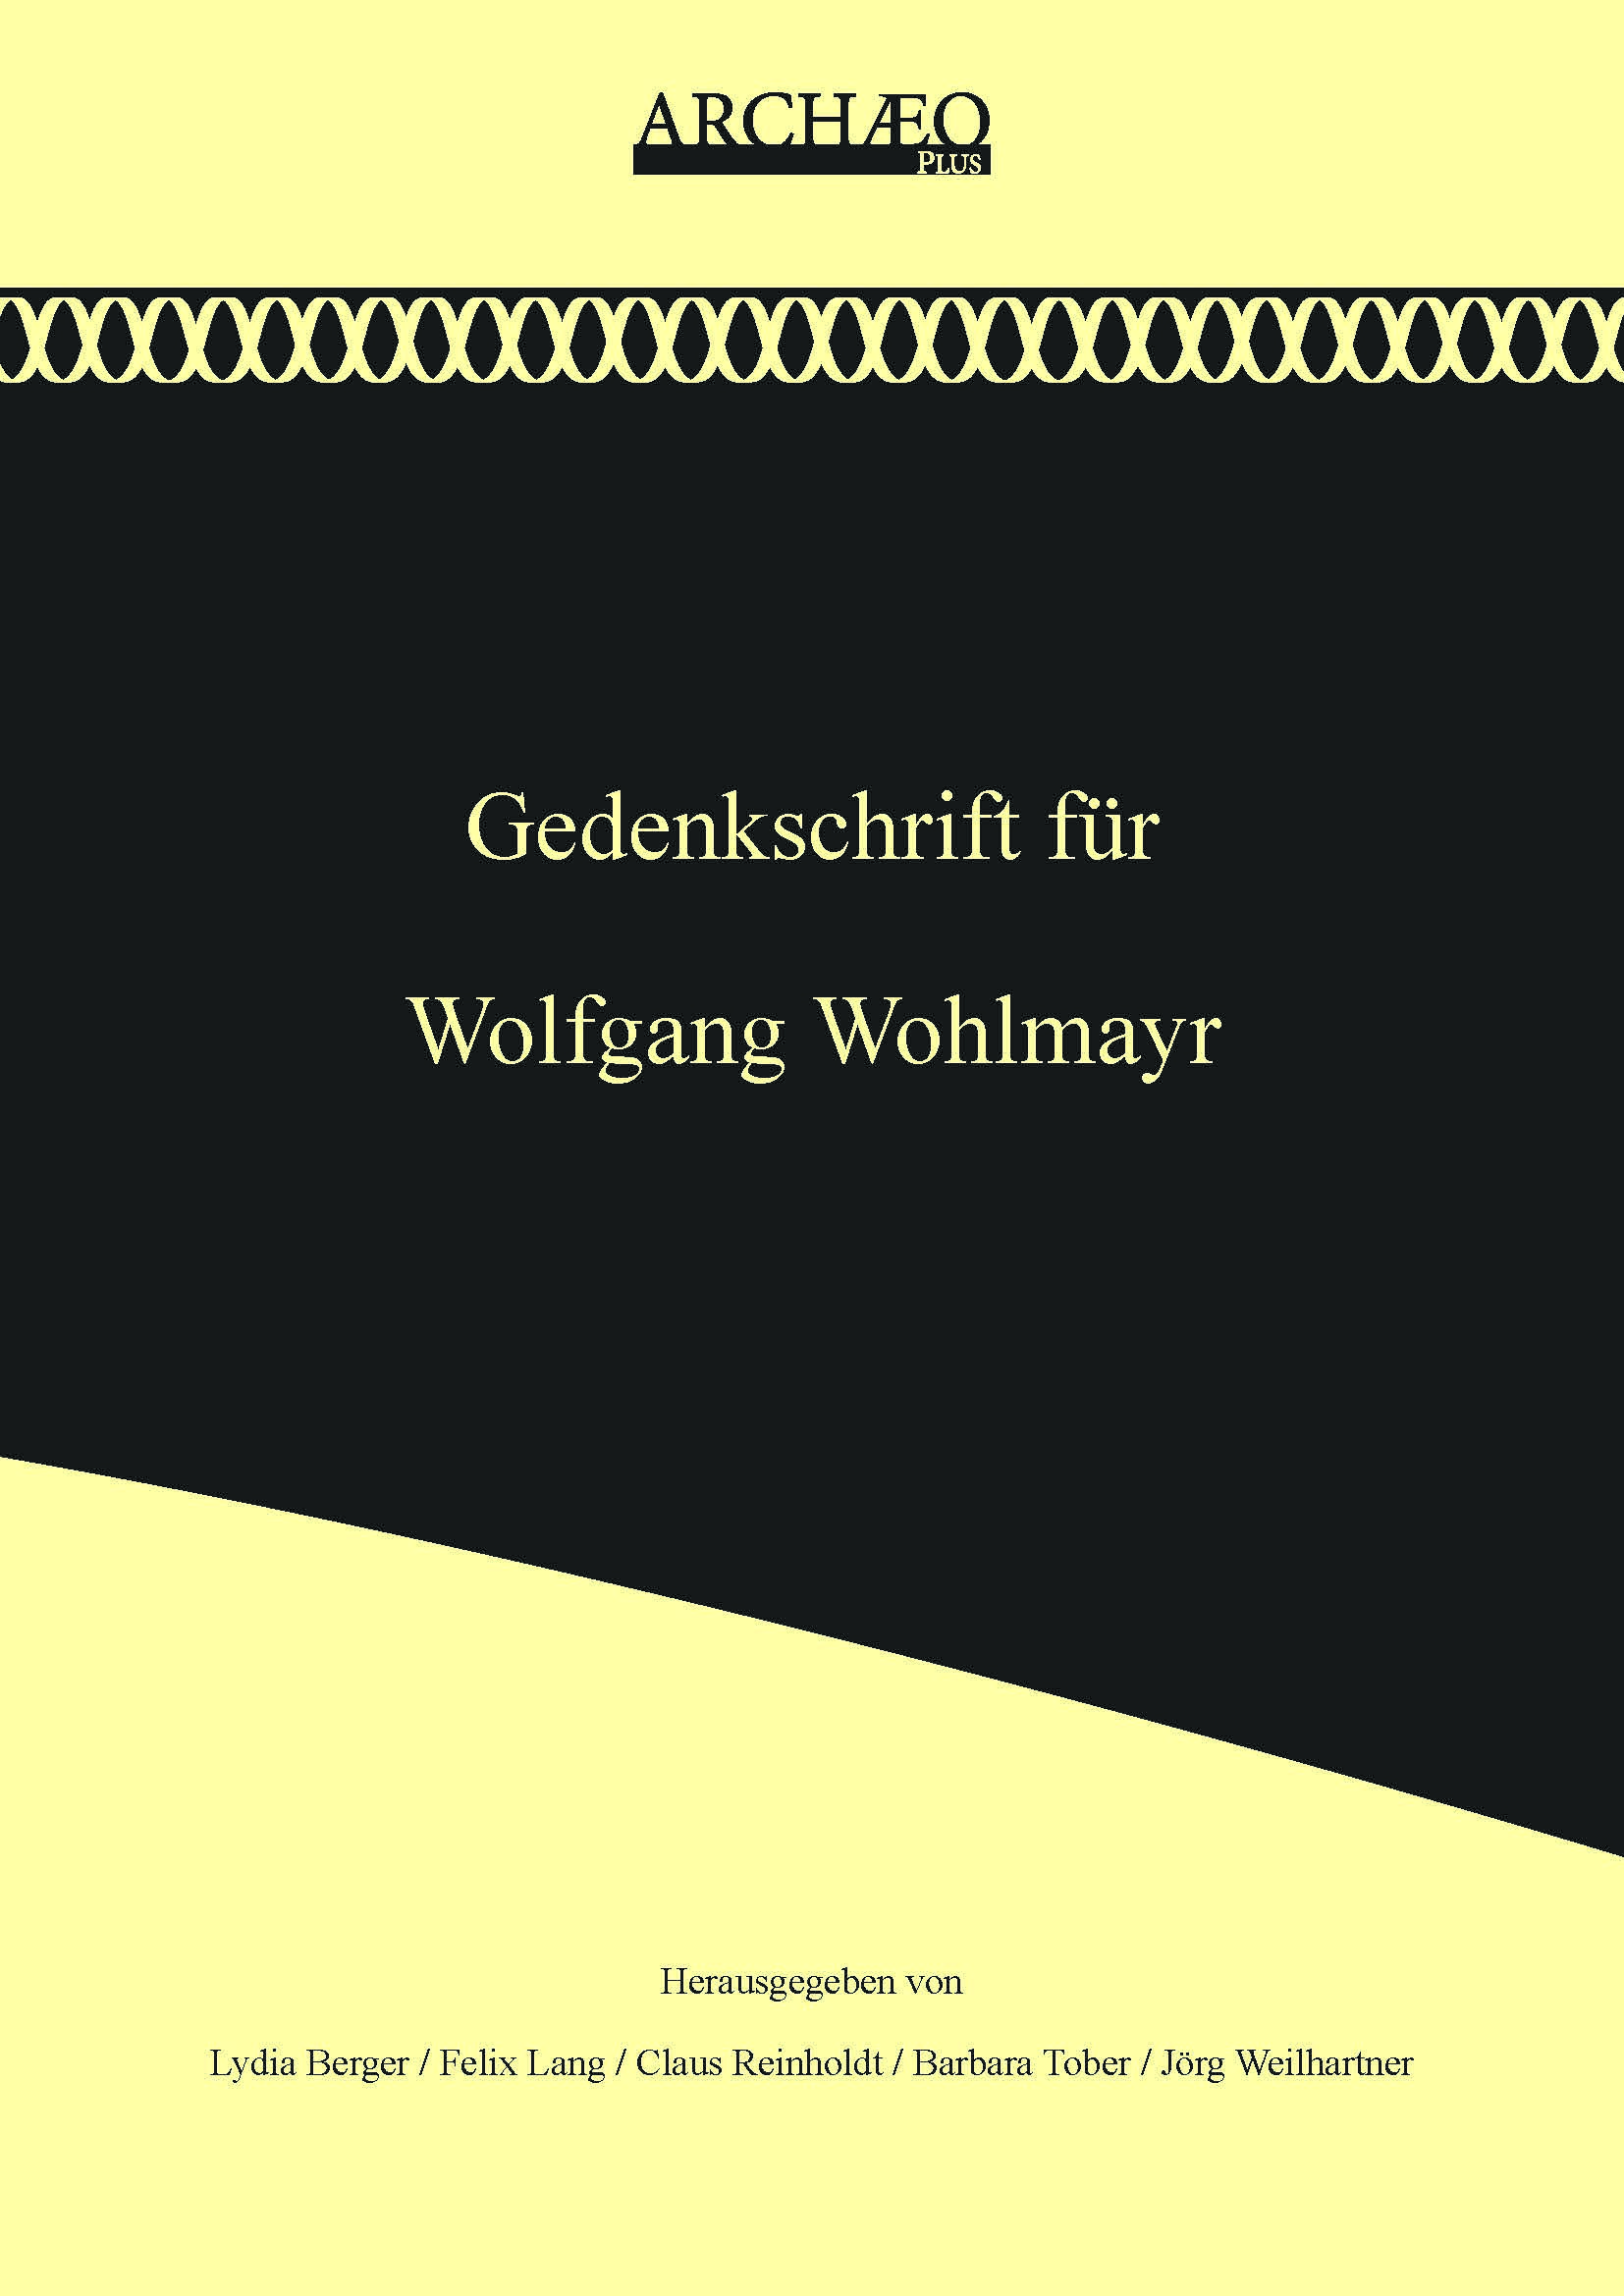 Berger, Lydia – Felix Lang –  Claus Reinholdt – Barbara Tober – Jörg Weilhartner; Gedenkschrift für Wolfgang Wohlmayr